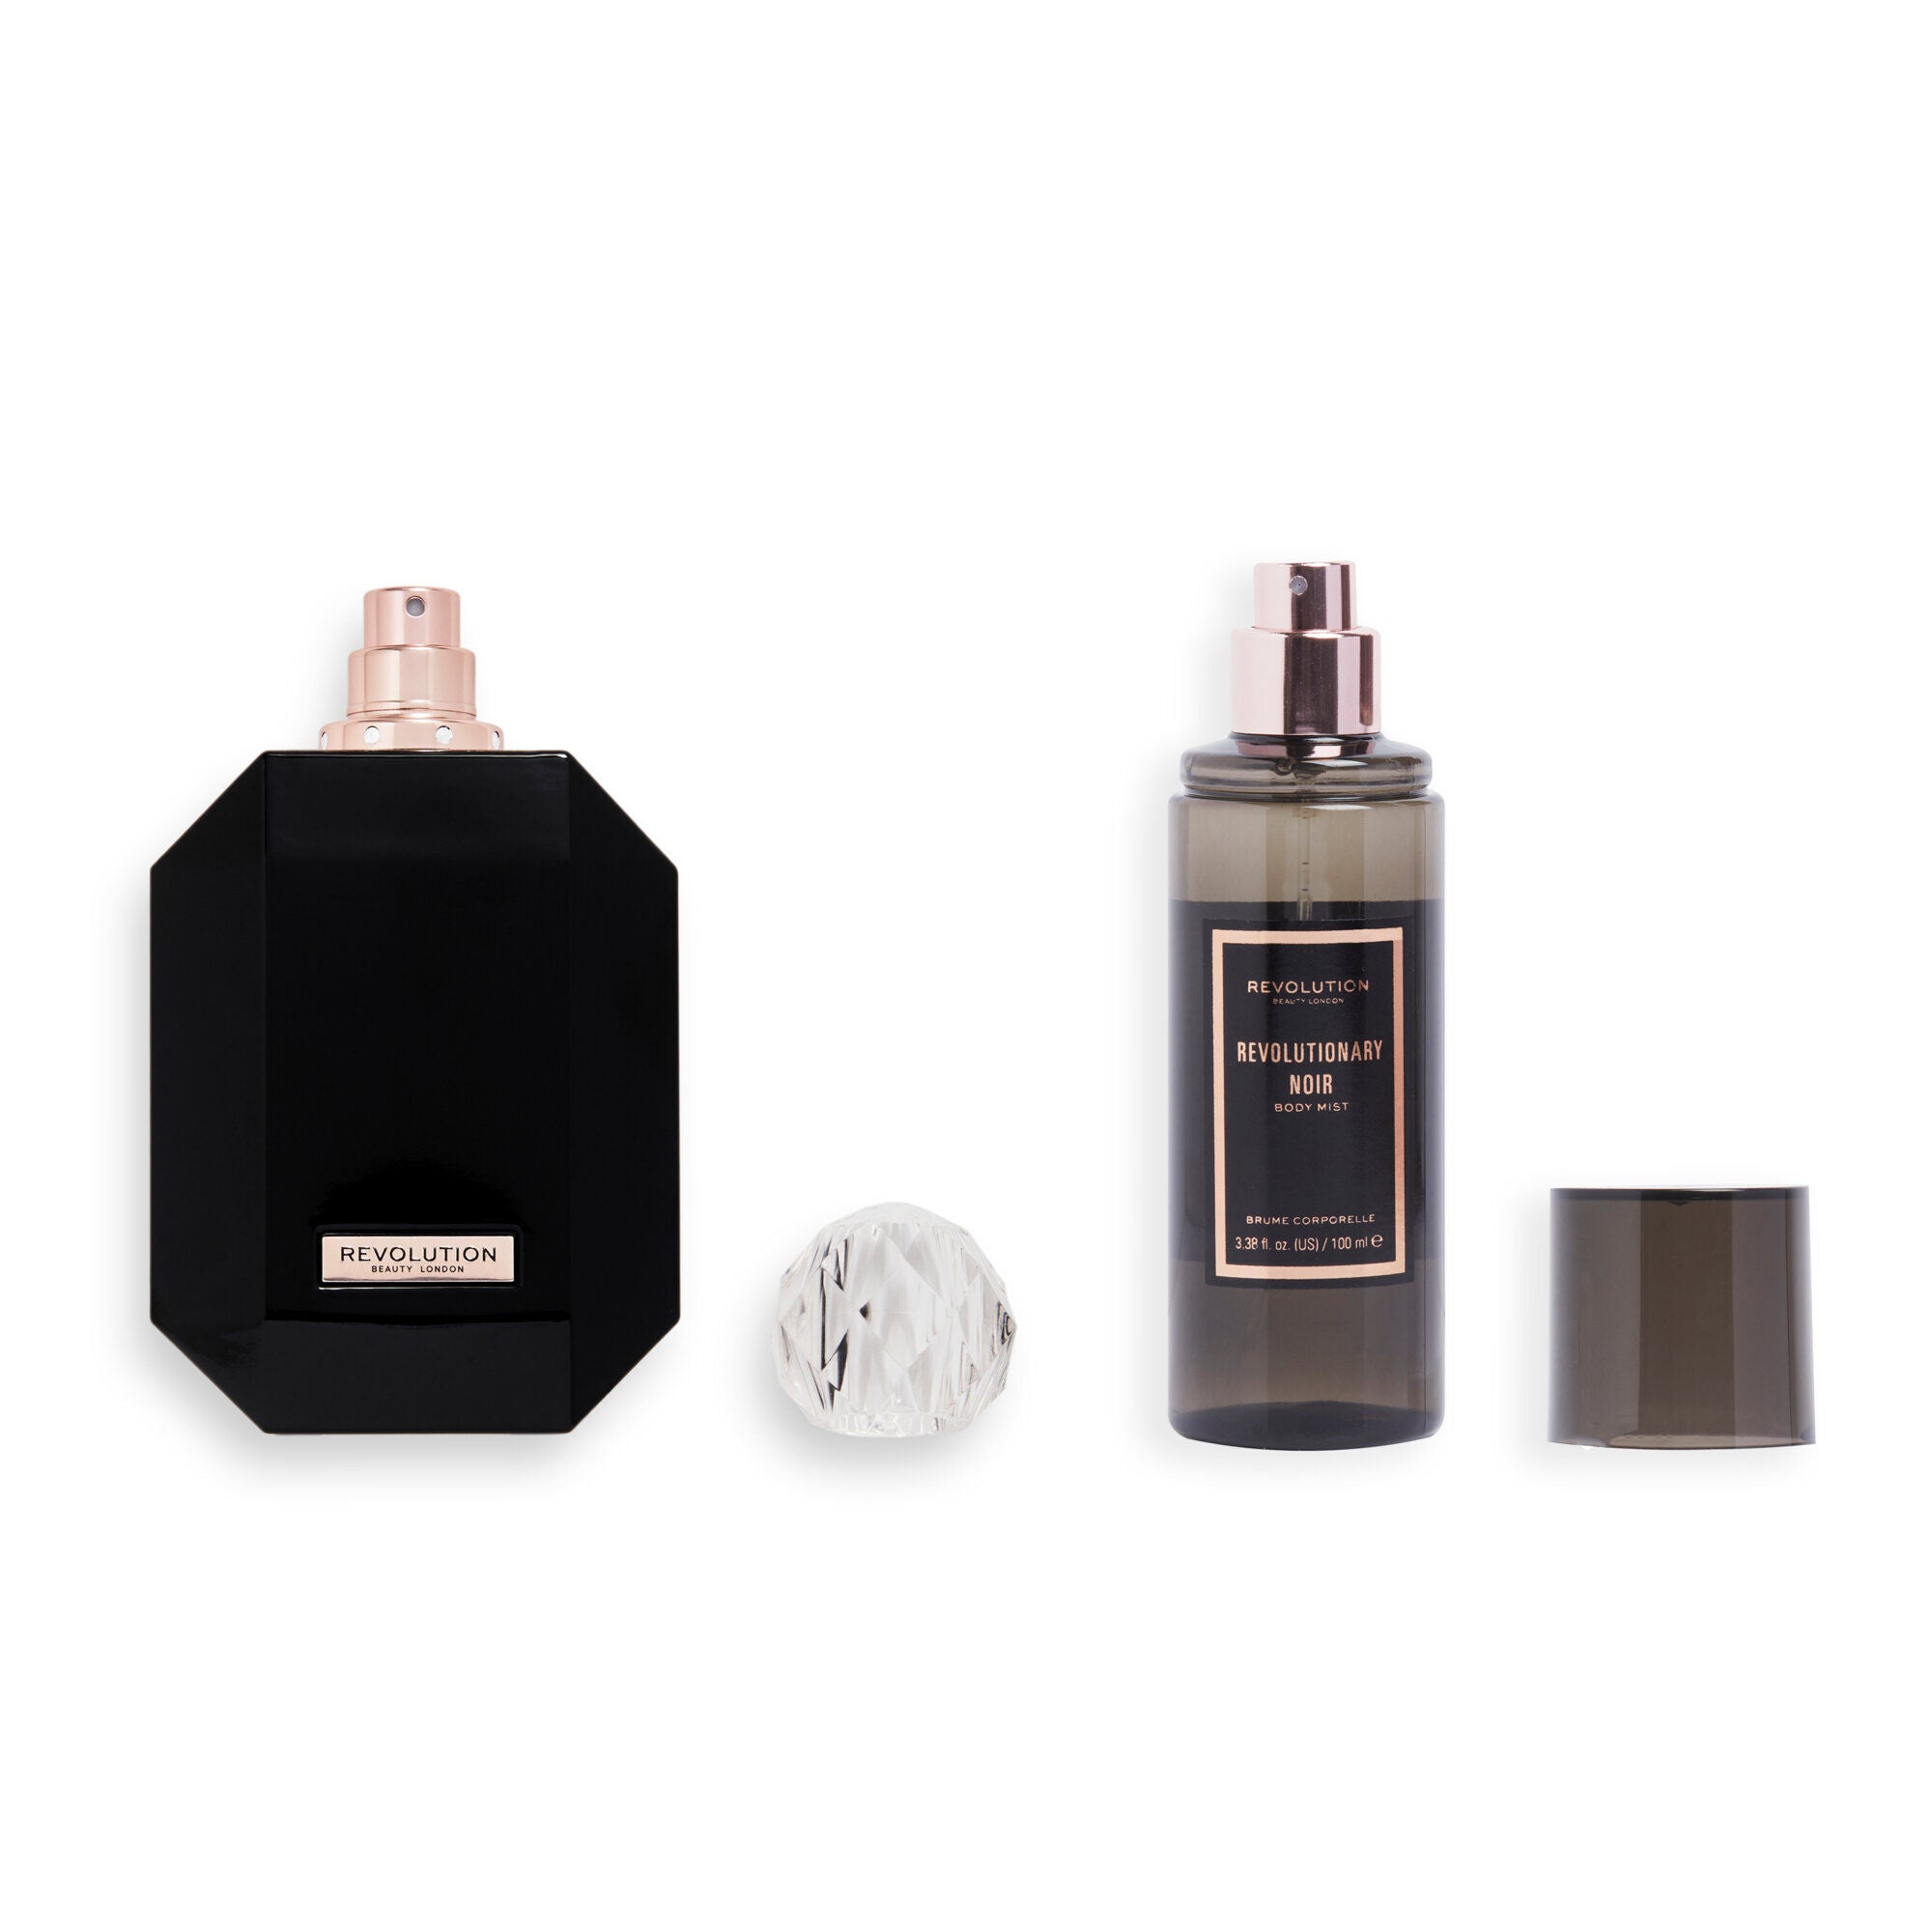 Makeup Revolution Revolutionary Noir Eau De Toilette & Body Mist Gift Set , products open